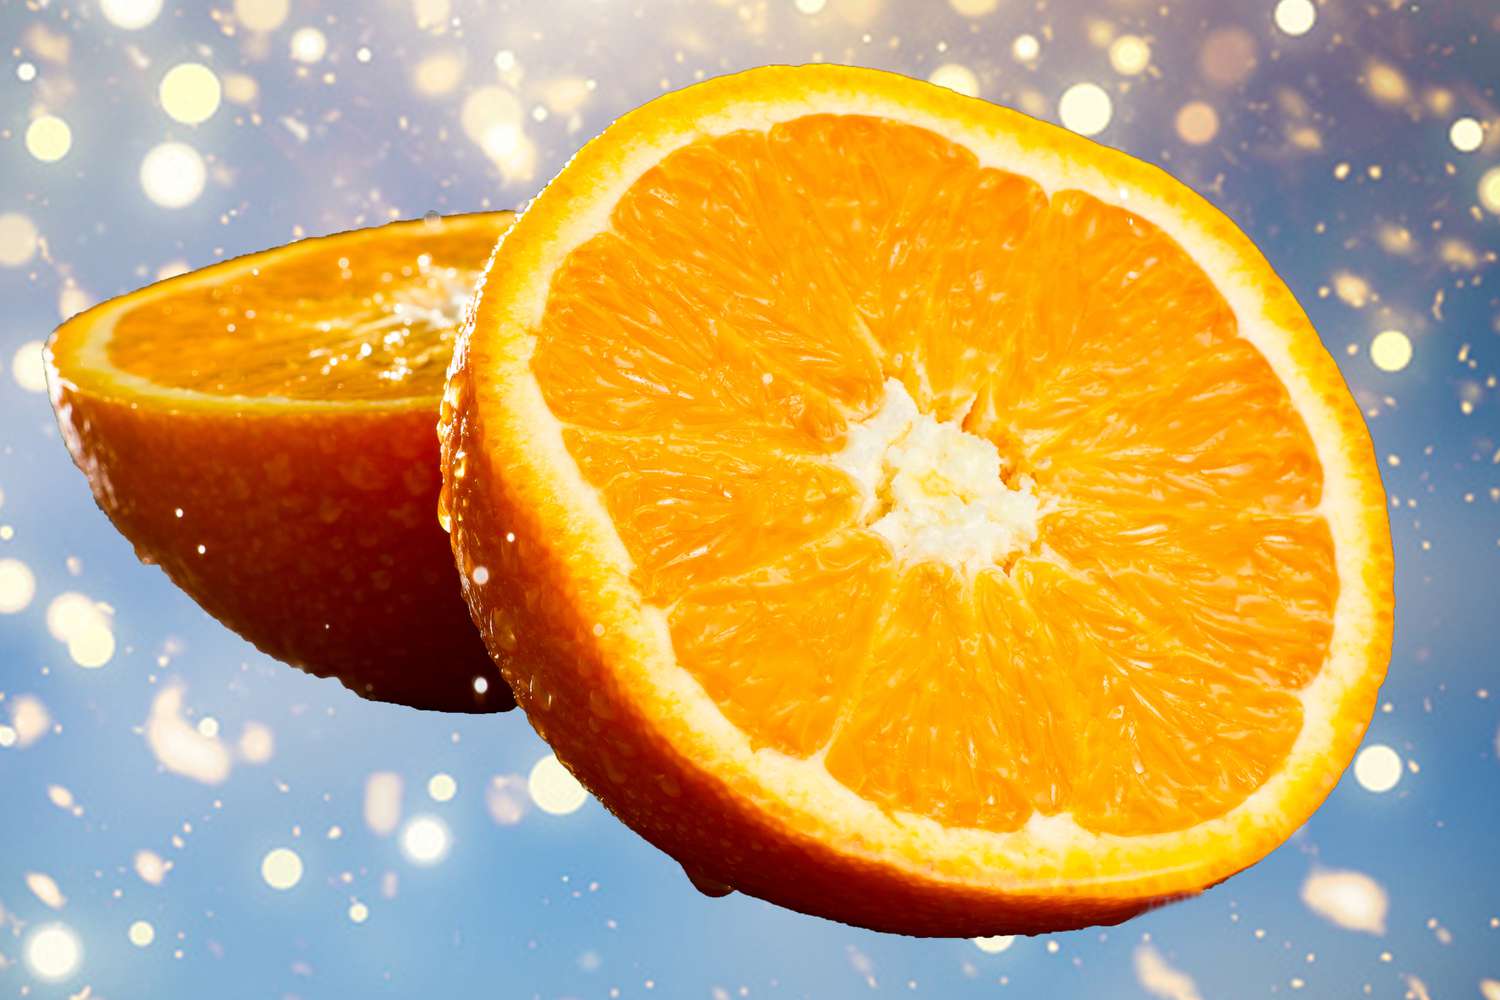 Las hojas de naranja a menudo contienen residuos de pesticidas, pero comer una naranja entera a la vez probablemente no será un problema (aumentar el riesgo de efectos negativos en la salud es una gran cantidad de pesticidas. Existe un resultado de la investigación que debe hacer). Además, si lava naranja con agua caliente antes de comer, puede eliminar una parte del pesticida residual.